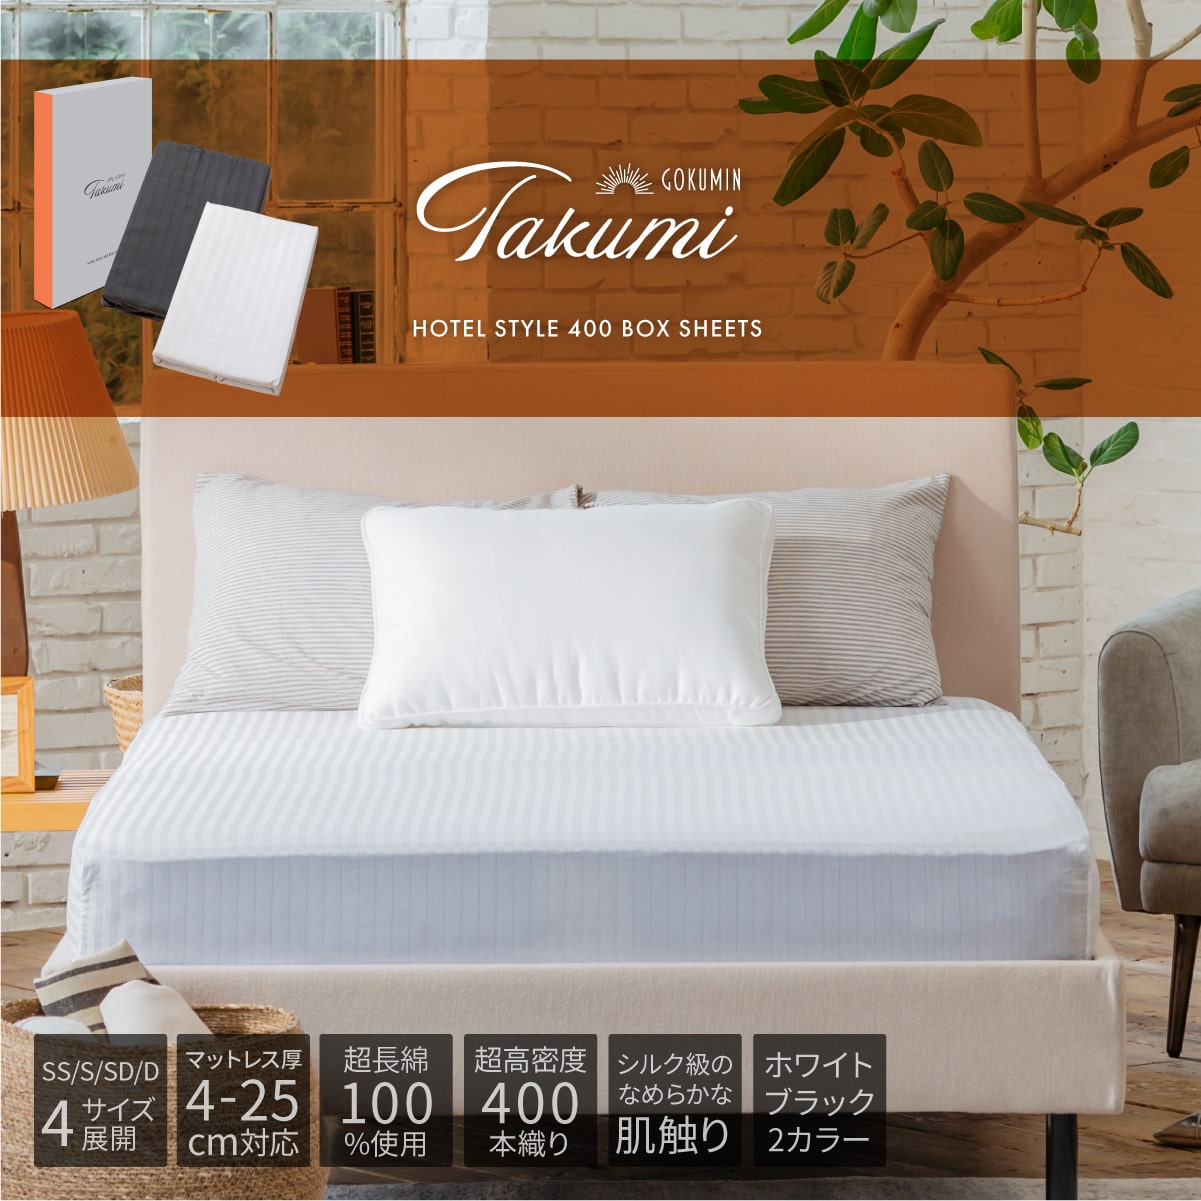 GOKUMIN Takumi ホテルスタイル ボックスシーツ シングル 厚み10-15cm